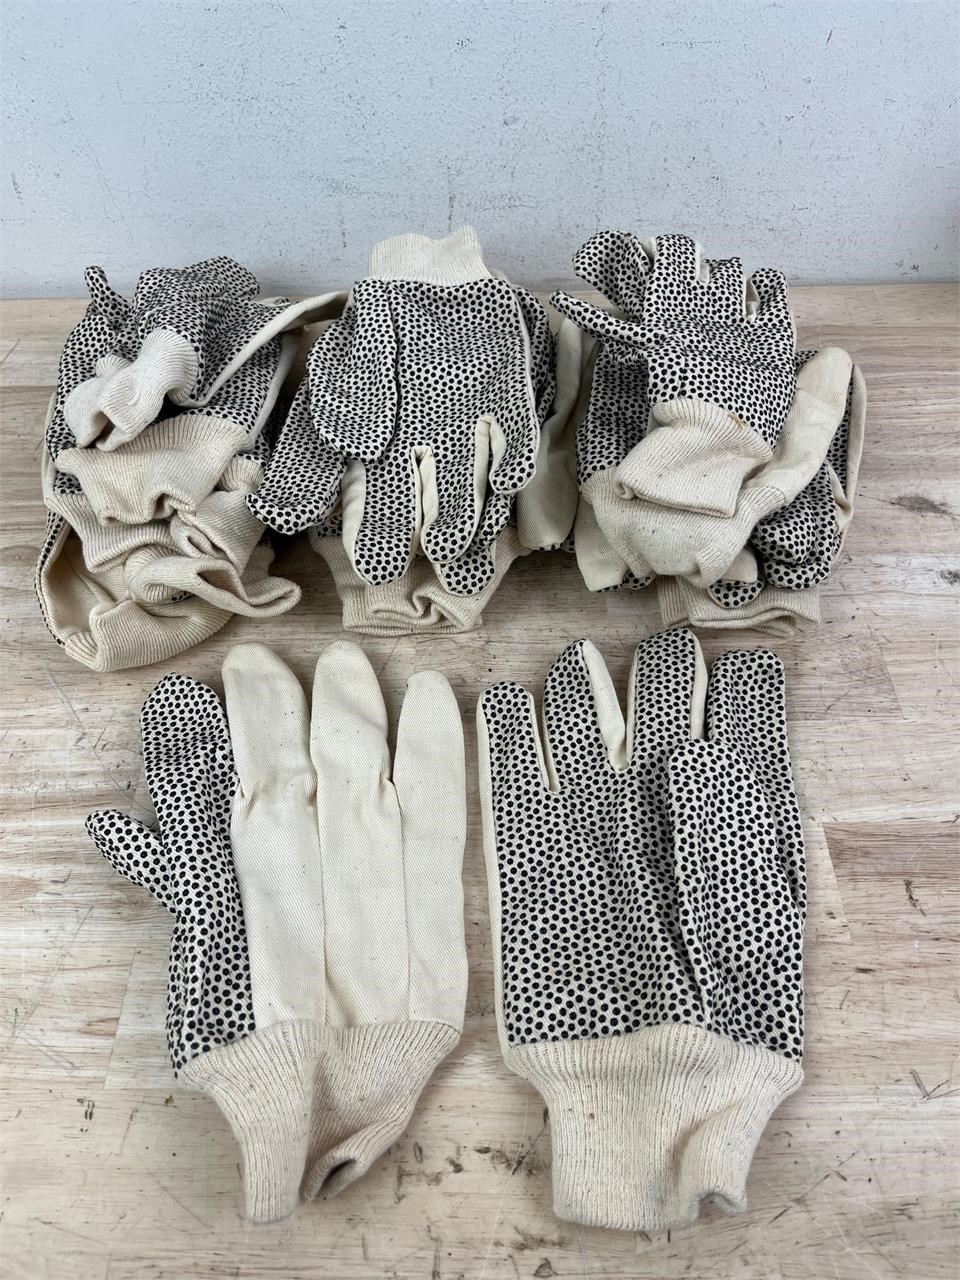 Lot of garden gloves